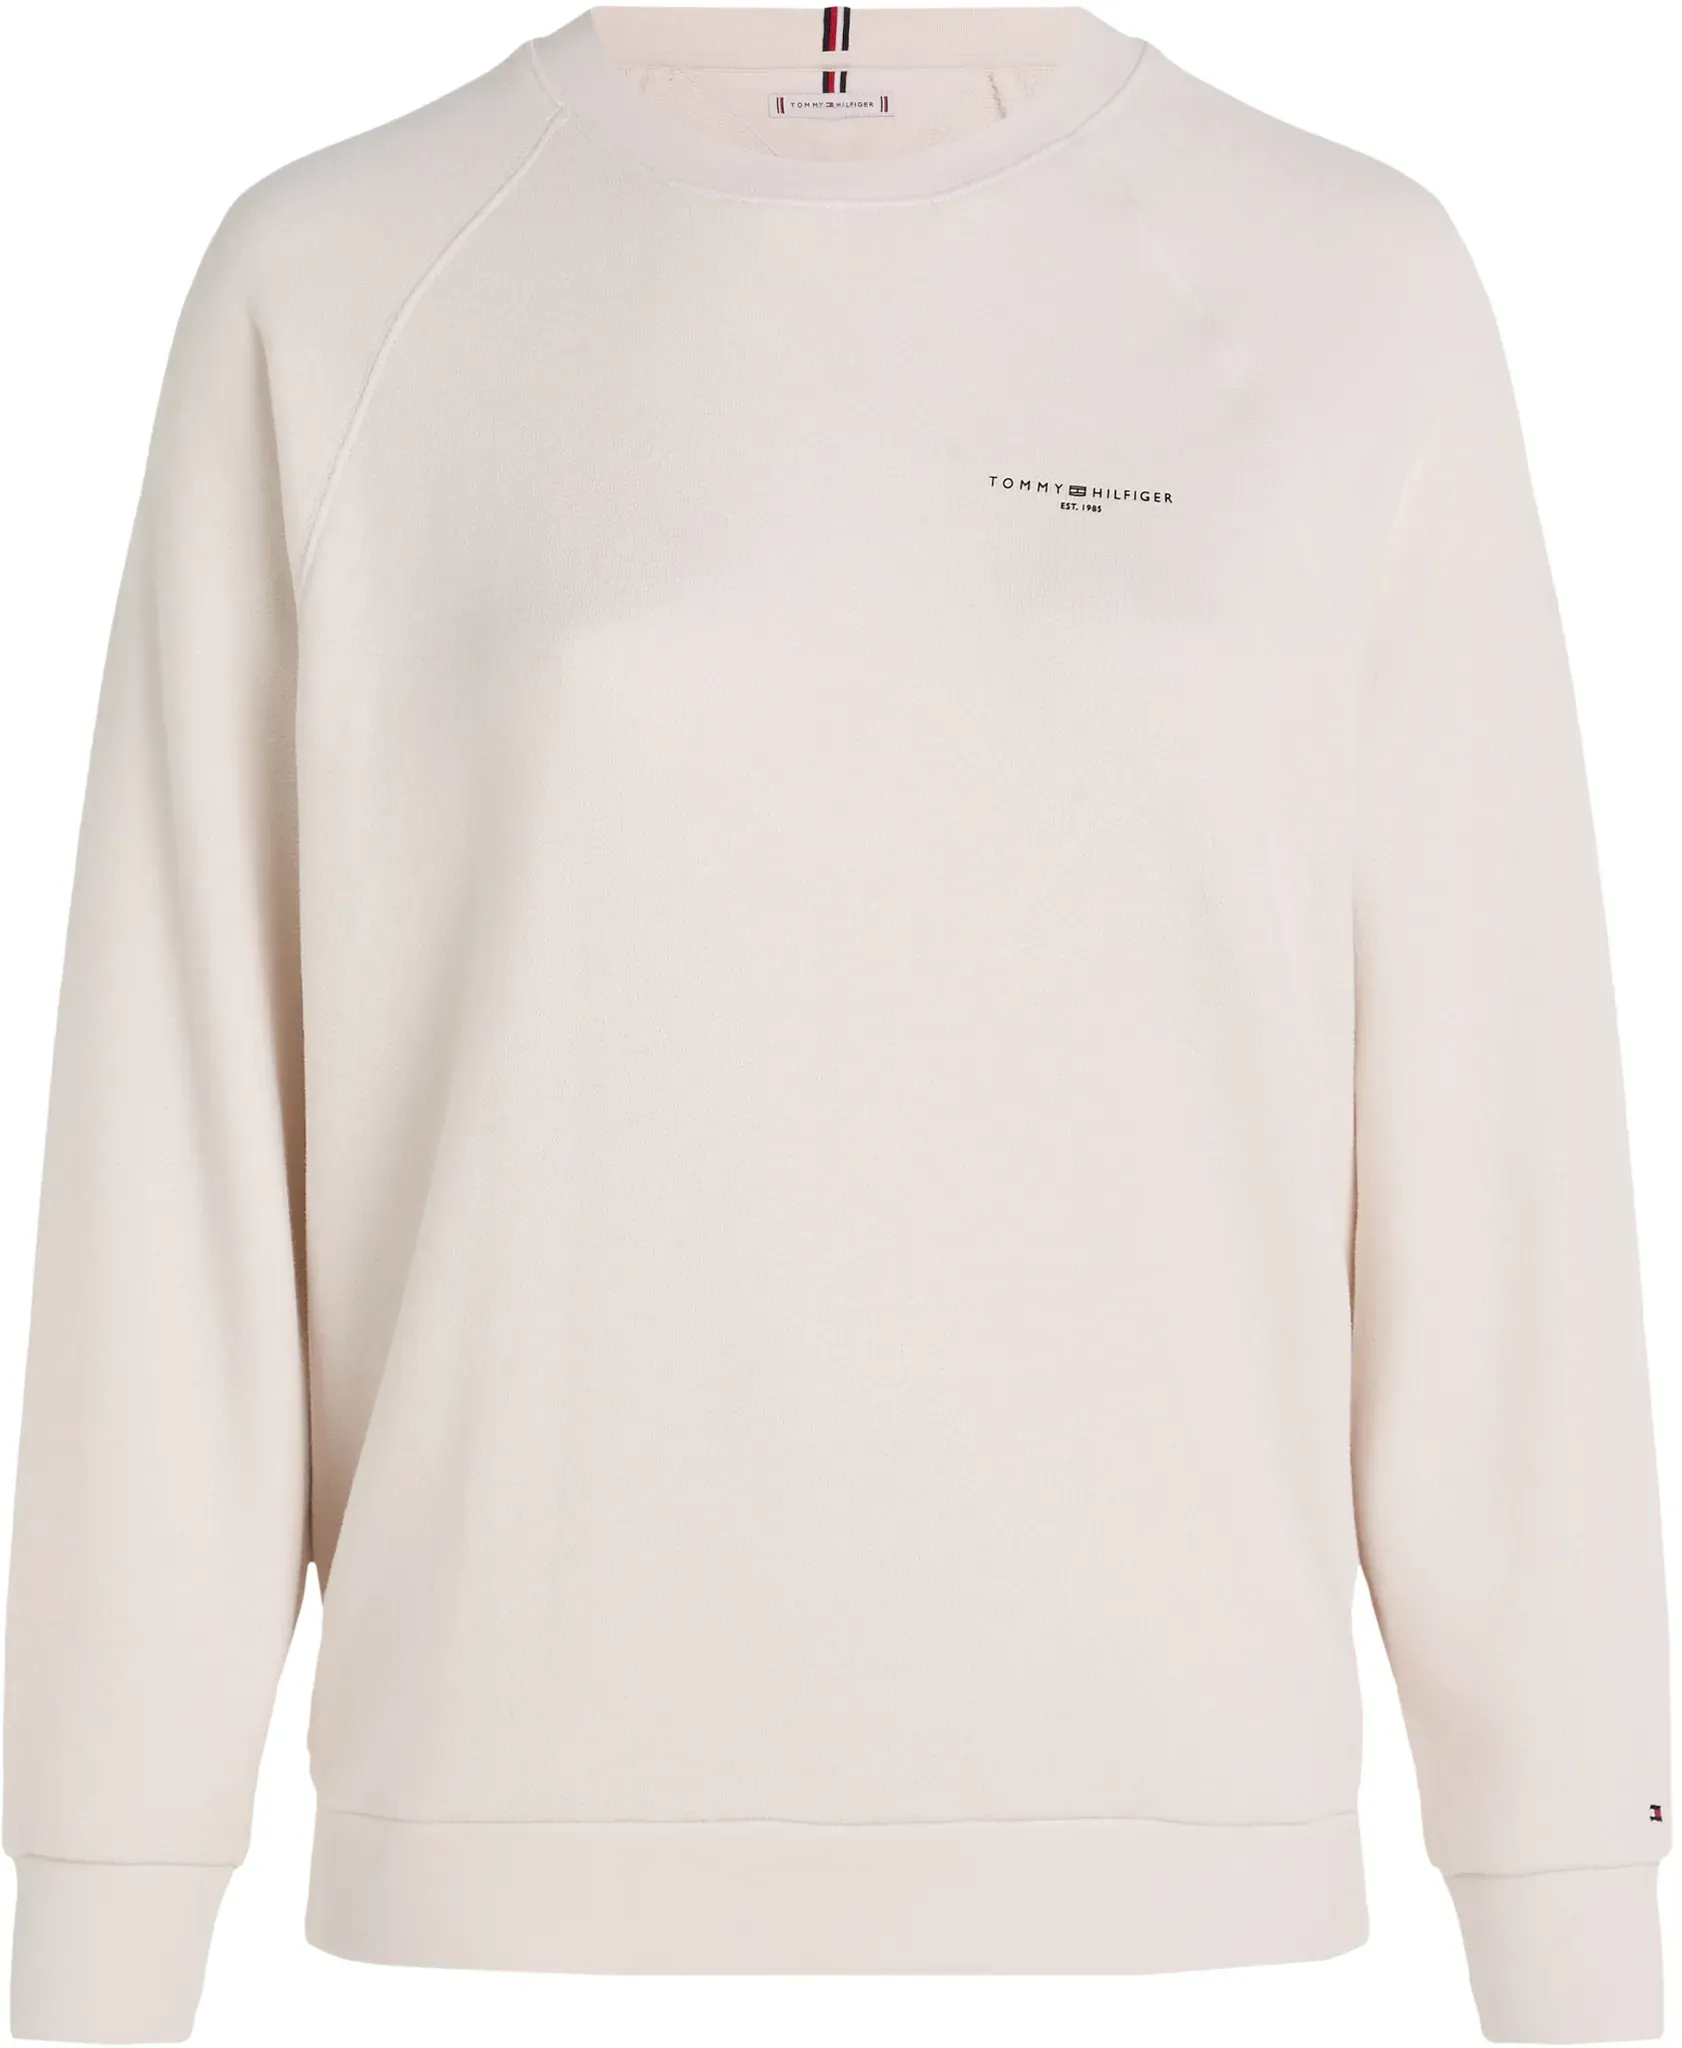 Sweatshirt TOMMY HILFIGER CURVE "CRV 1985 RLX MINI CORP SWTSHRT" Gr. 48, weiß (weathered_white) Damen Sweatshirts